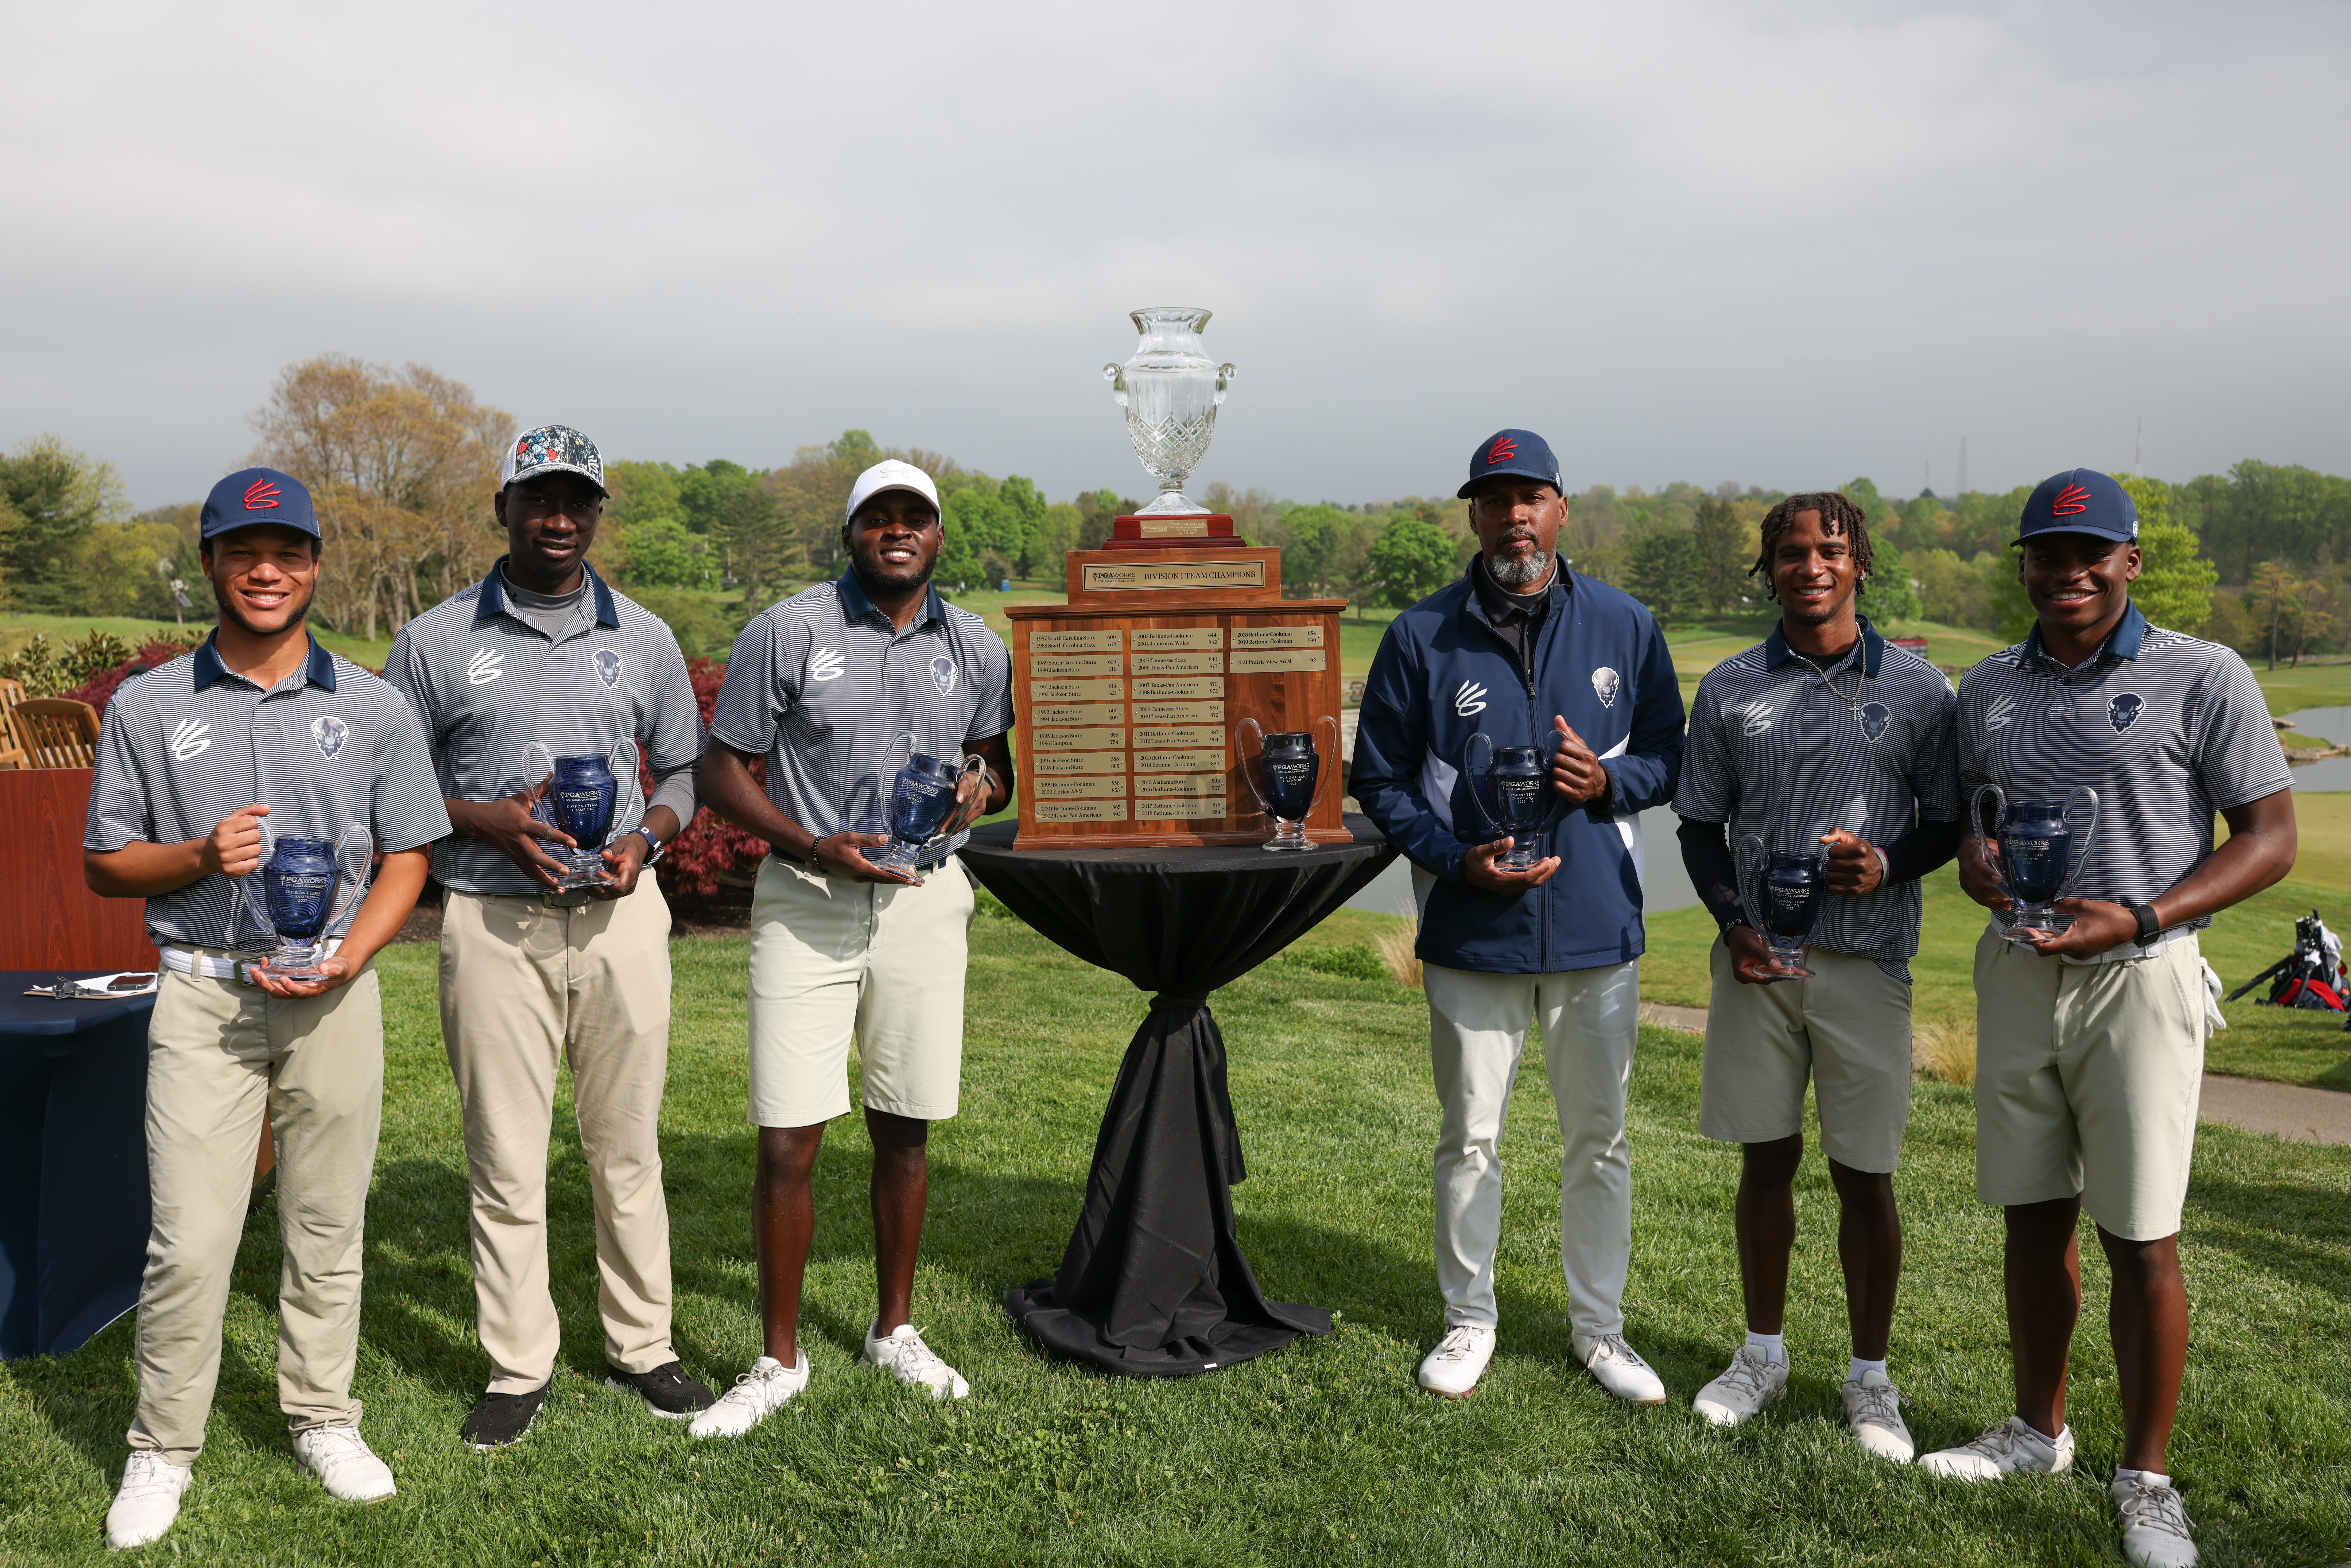 Howard University's men's golf team at the 2022 PGA WORKS Collegiate Championship.